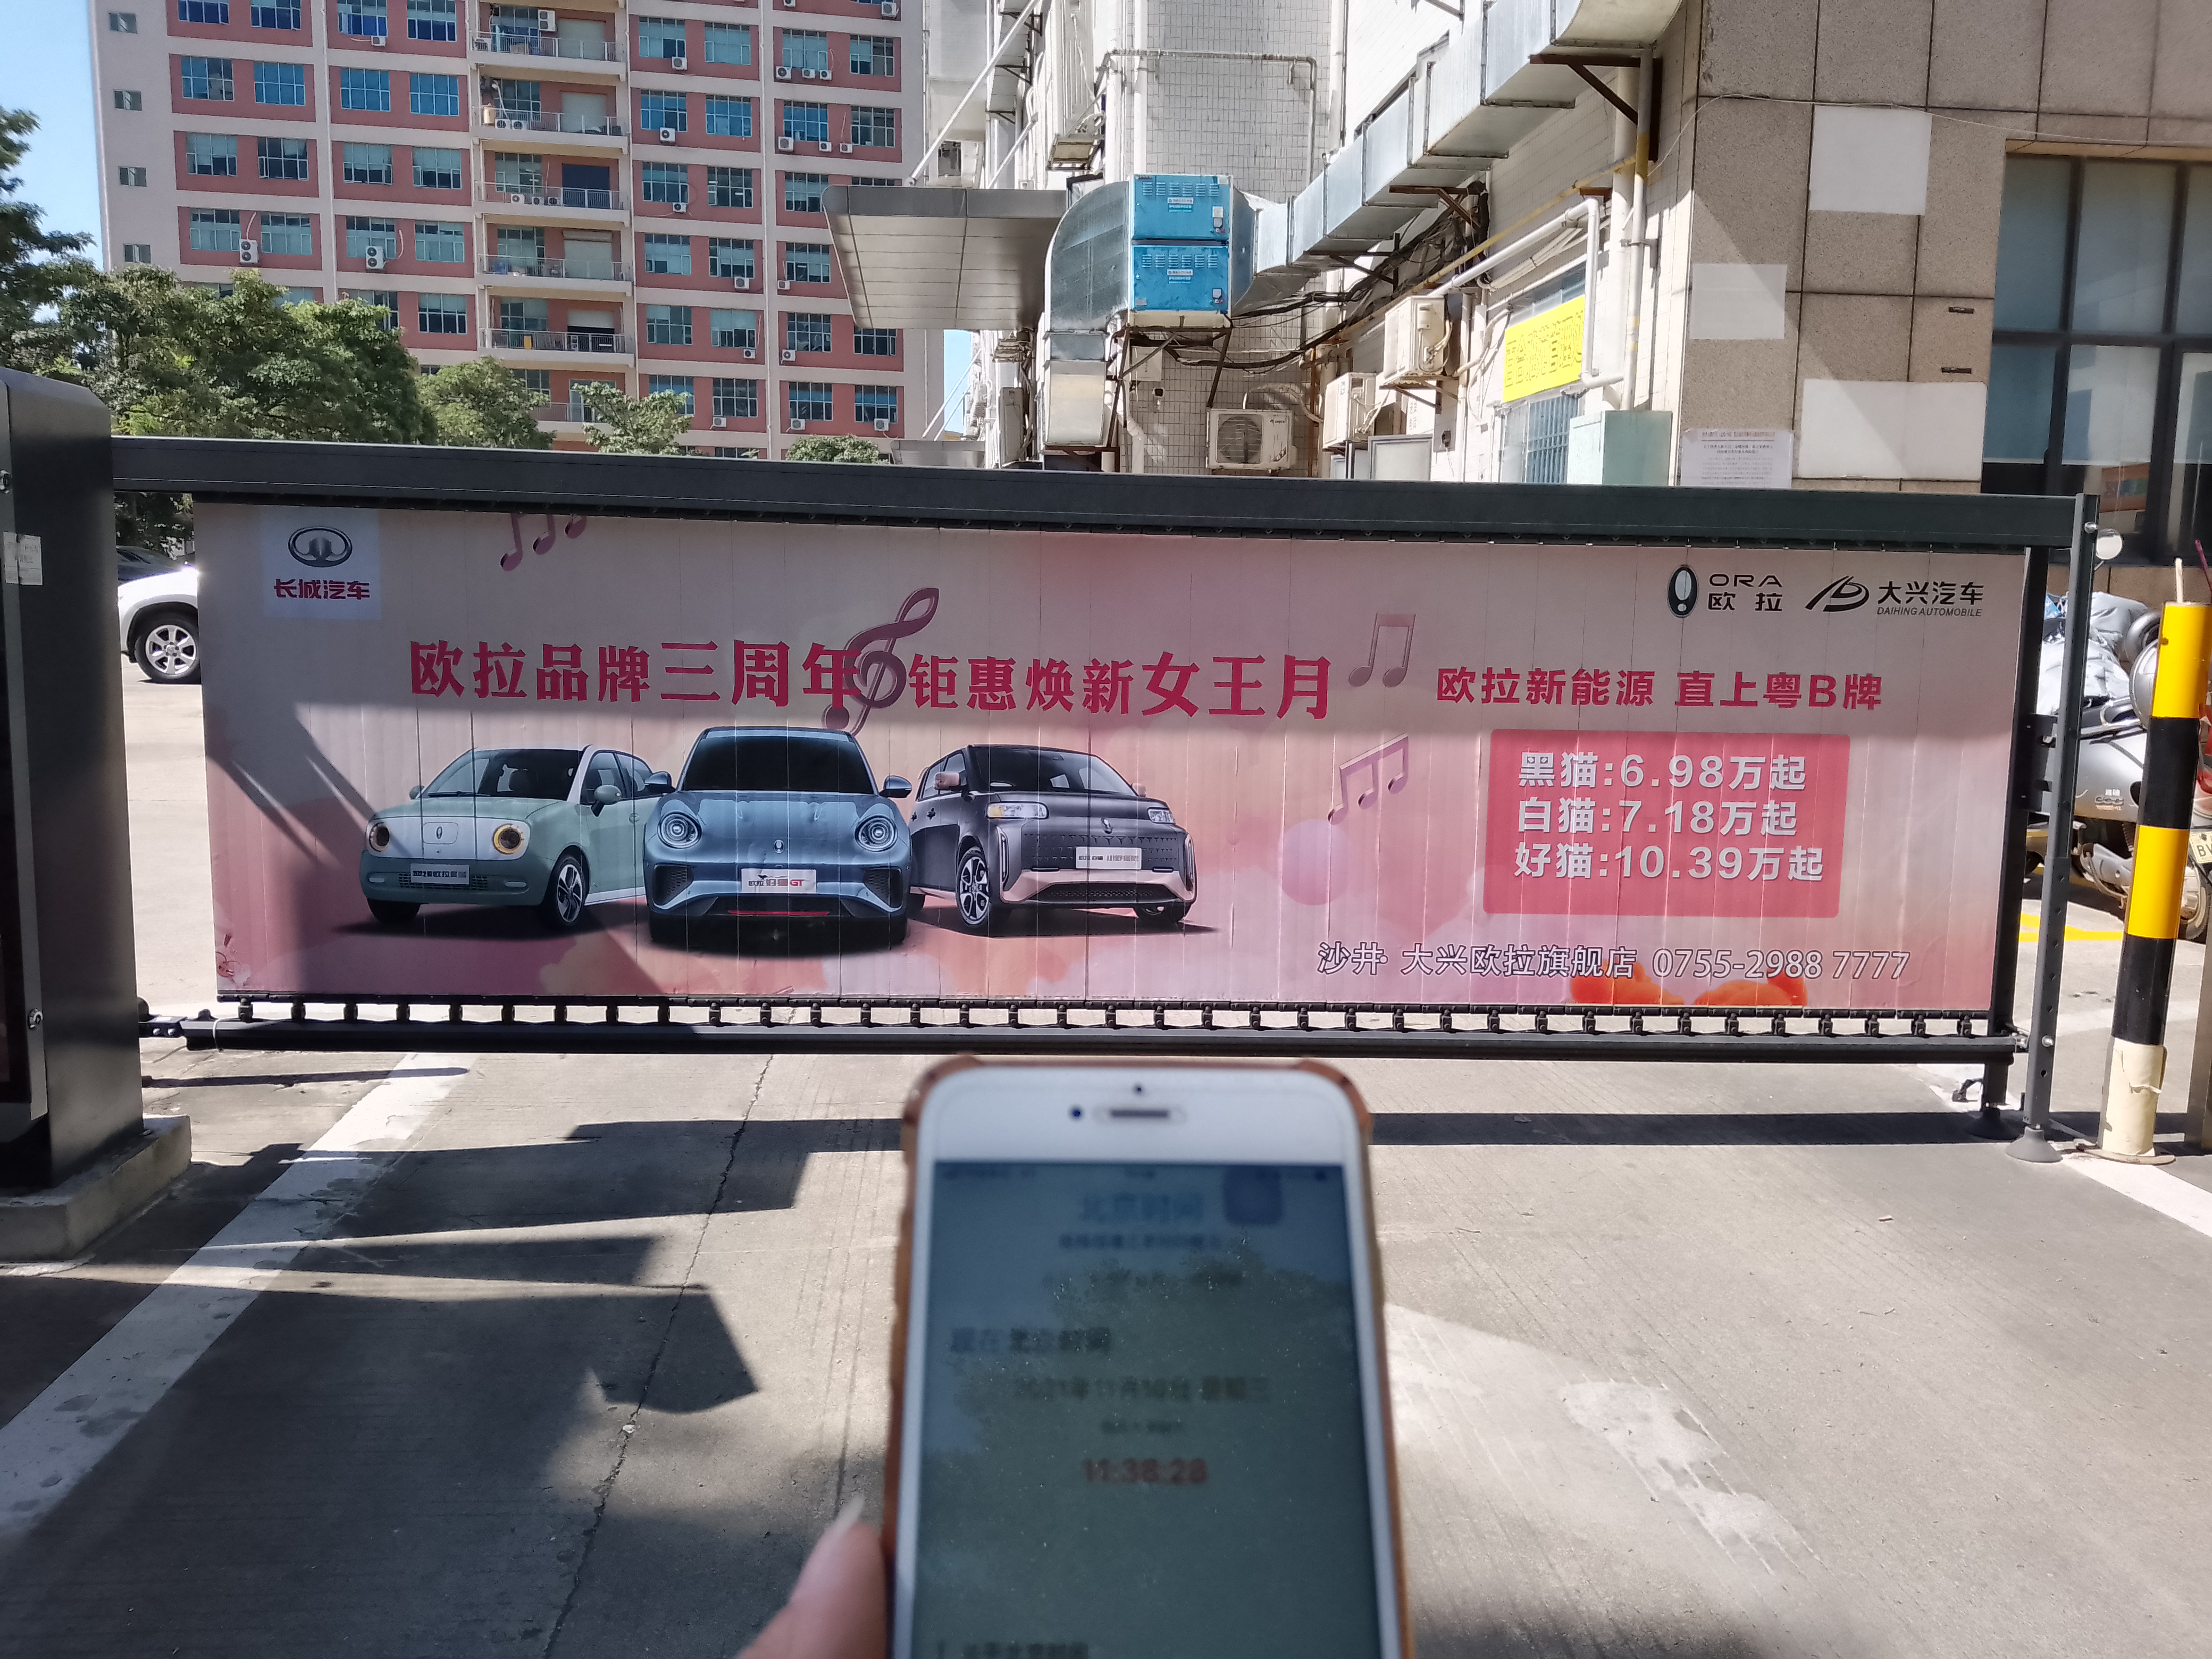 欧拉品牌三周年|广信和传媒助力深圳大兴汽车投放道闸广告图片